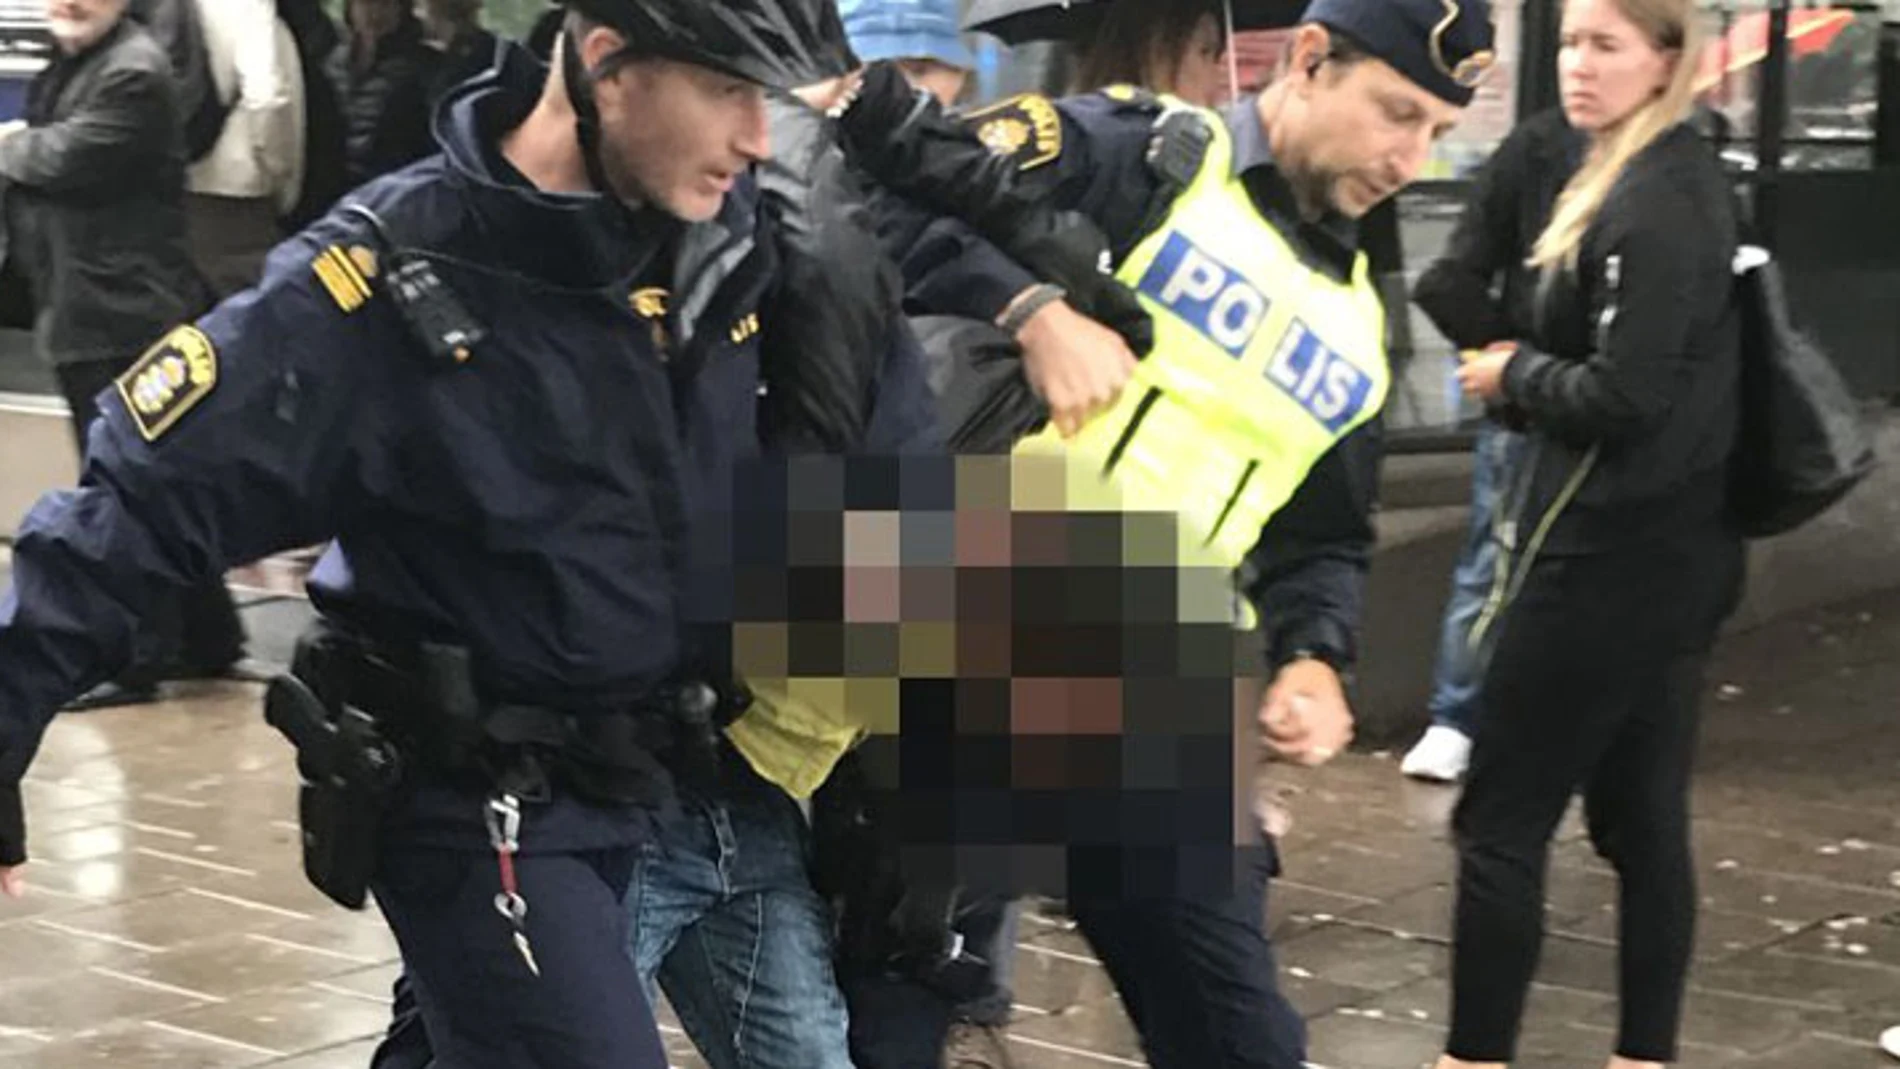 La Policía de Estocolmo detiene al supuesto agresor de dos agentes